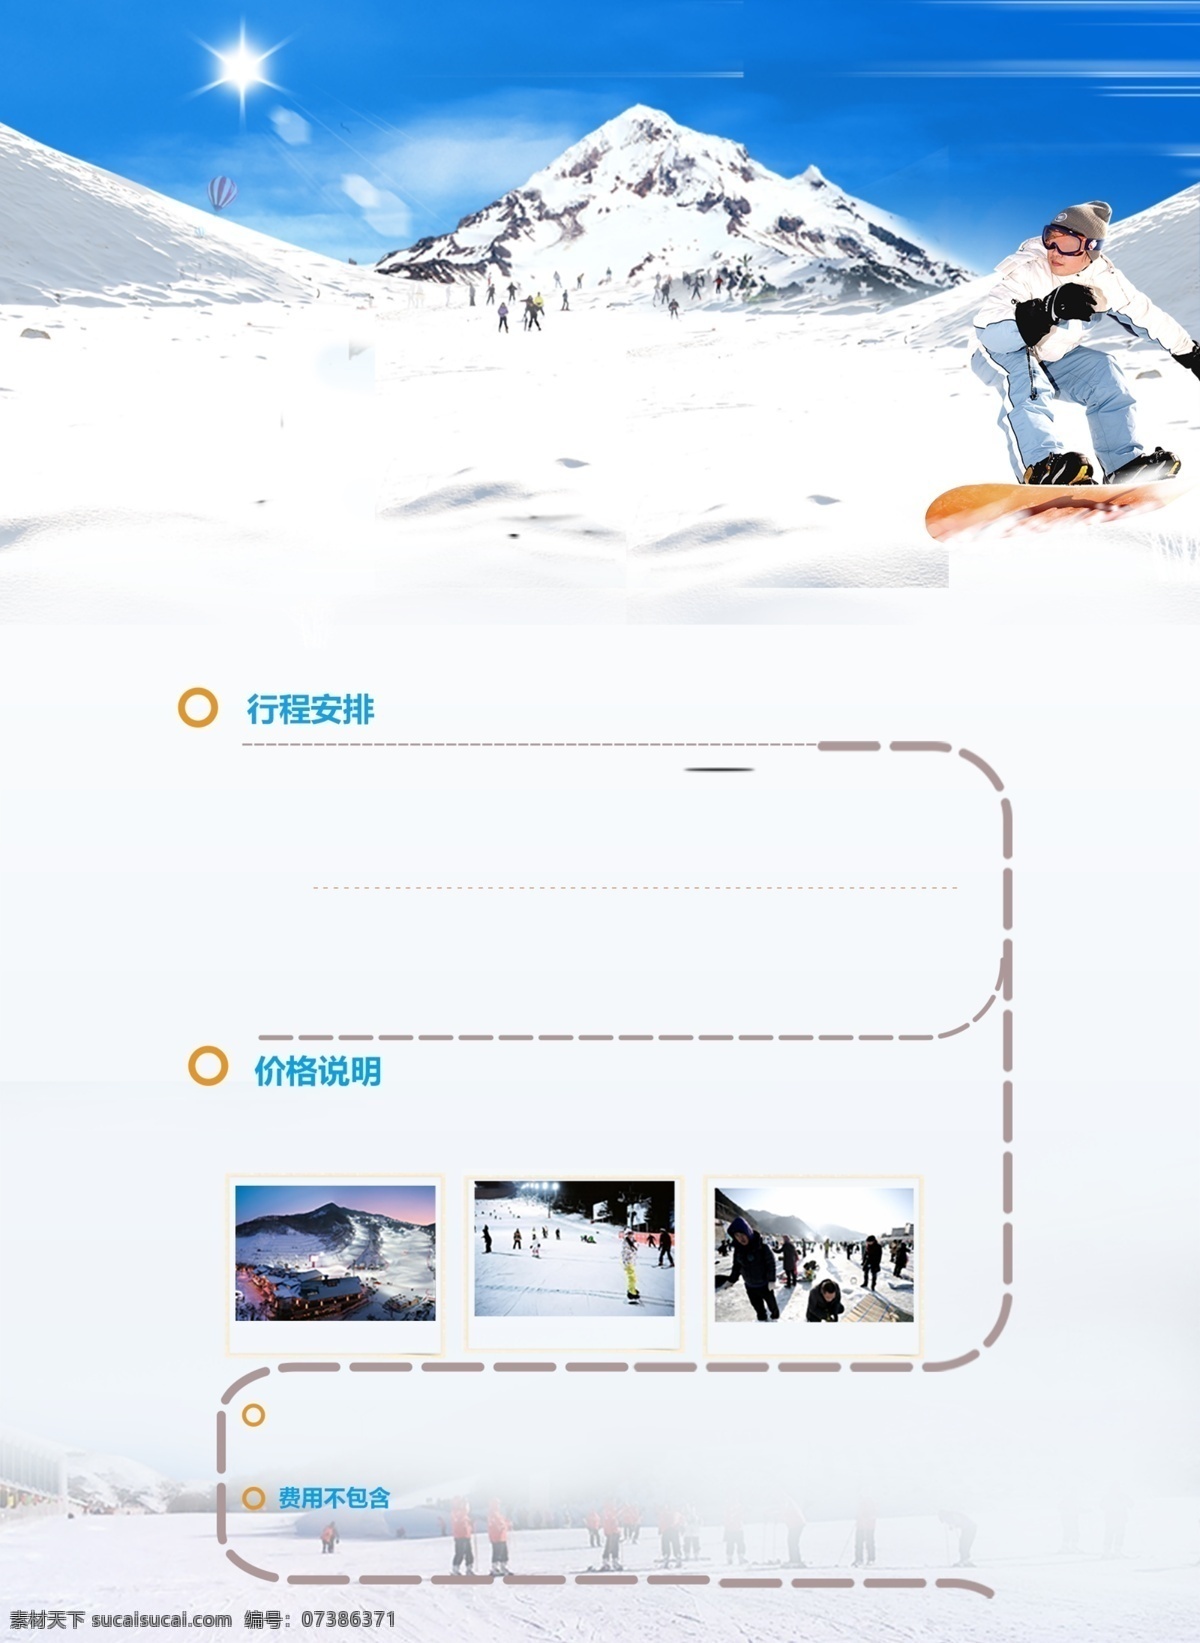 滑雪体育 滑雪创新图片 滑雪 滑雪海报 单板滑雪 滑雪运动 滑雪宣传 滑雪展板 登山滑雪 滑雪挑战 激情滑雪 滑雪画册 滑雪标语 滑雪背景 滑雪手册 滑雪挂图 公司滑雪 滑雪素材 滑雪文化 滑雪创新